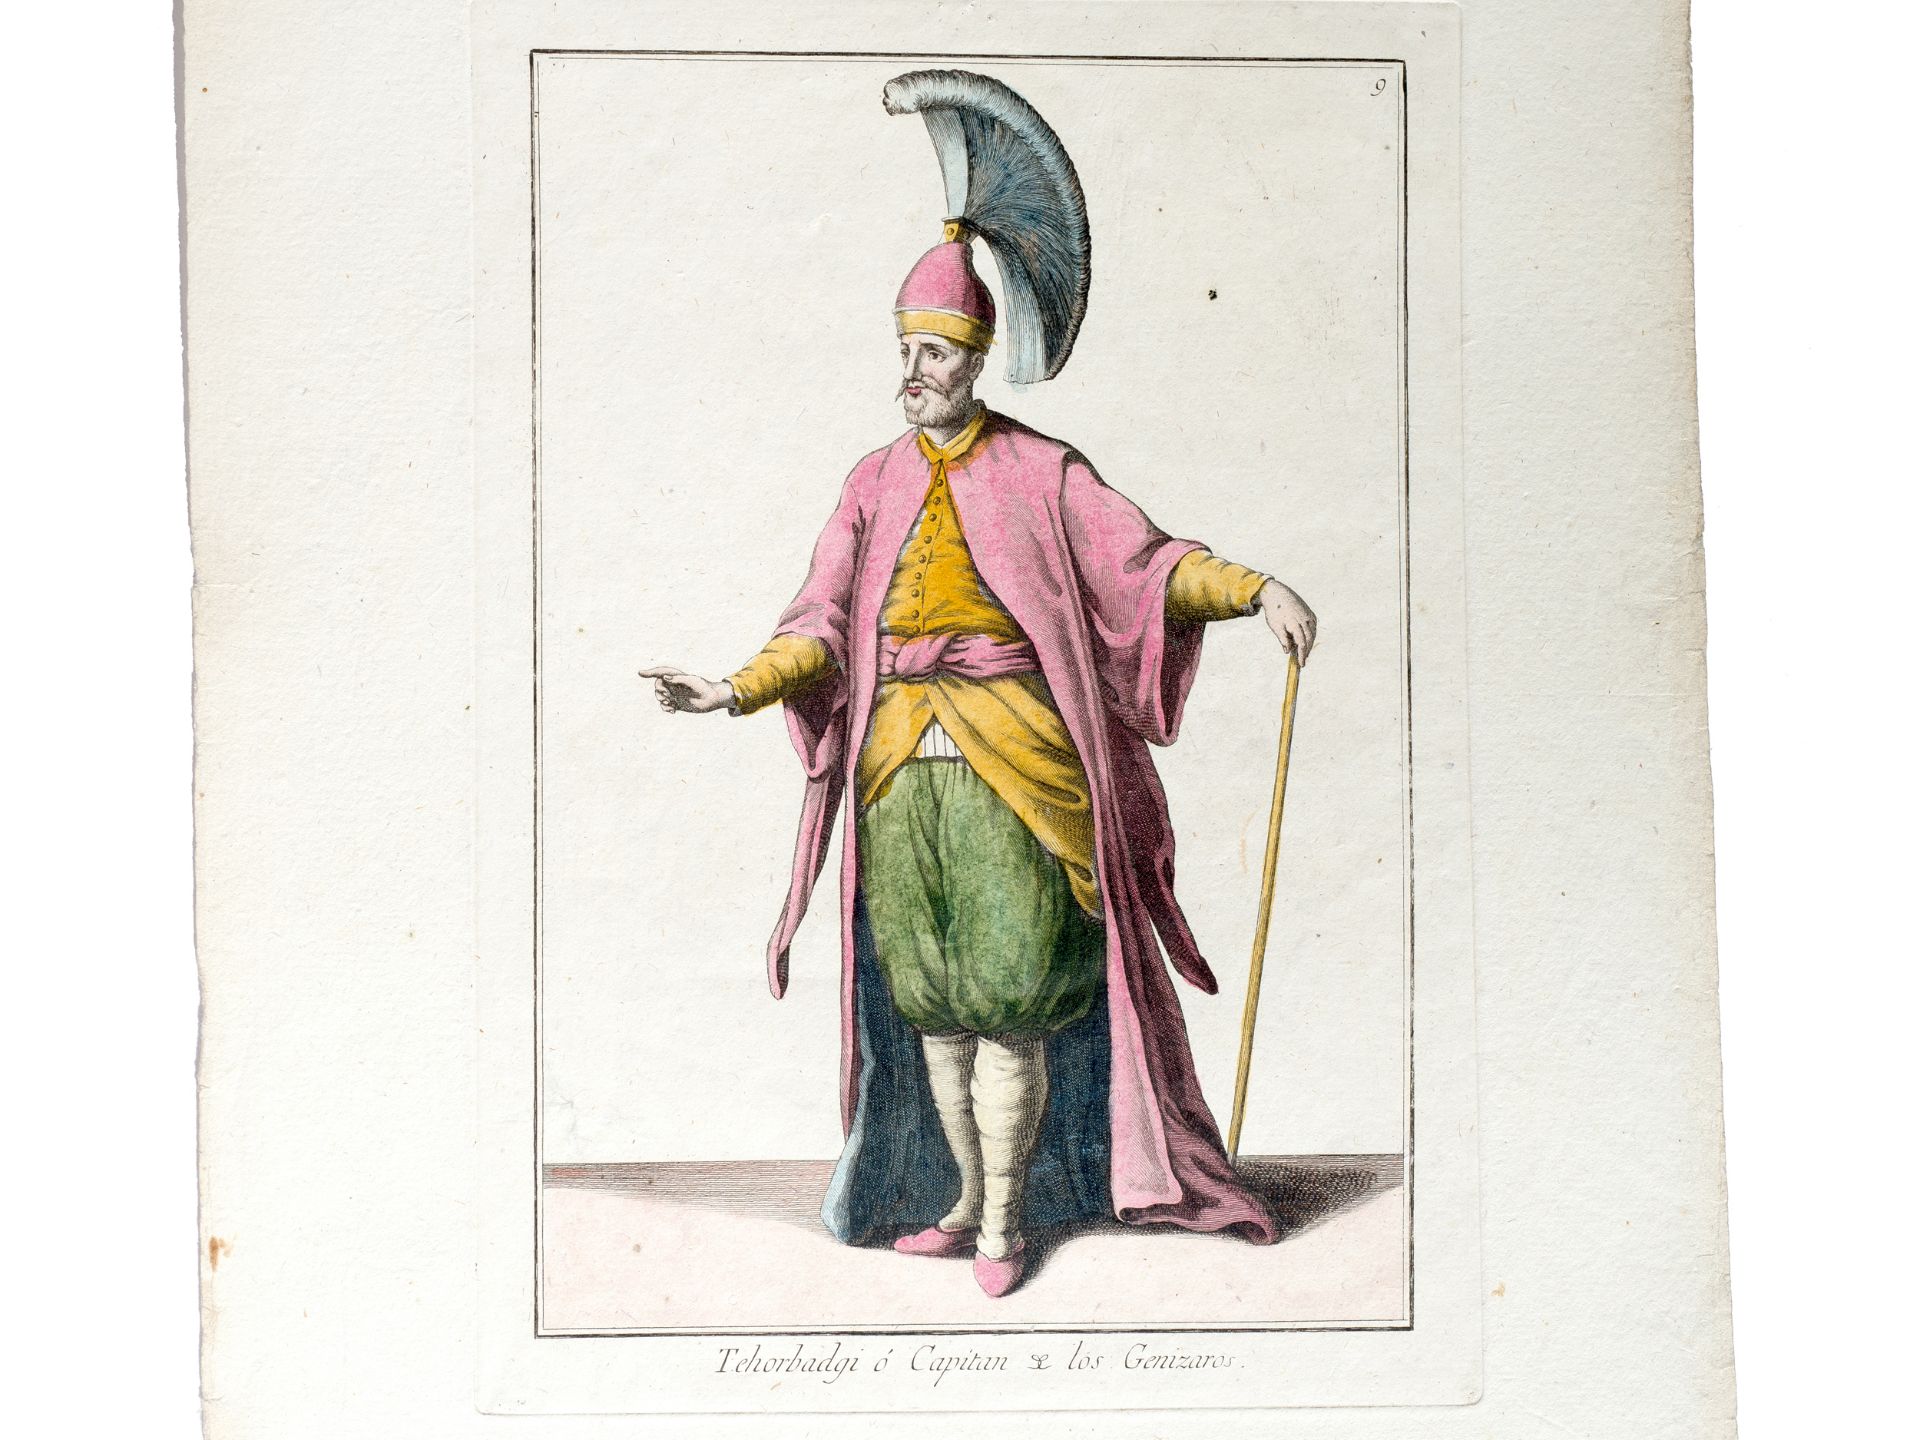 „Tehorbadgi ó Capitan de los Genizaros“, Aus einem Buch historischer Kostümstudien?, Spanien